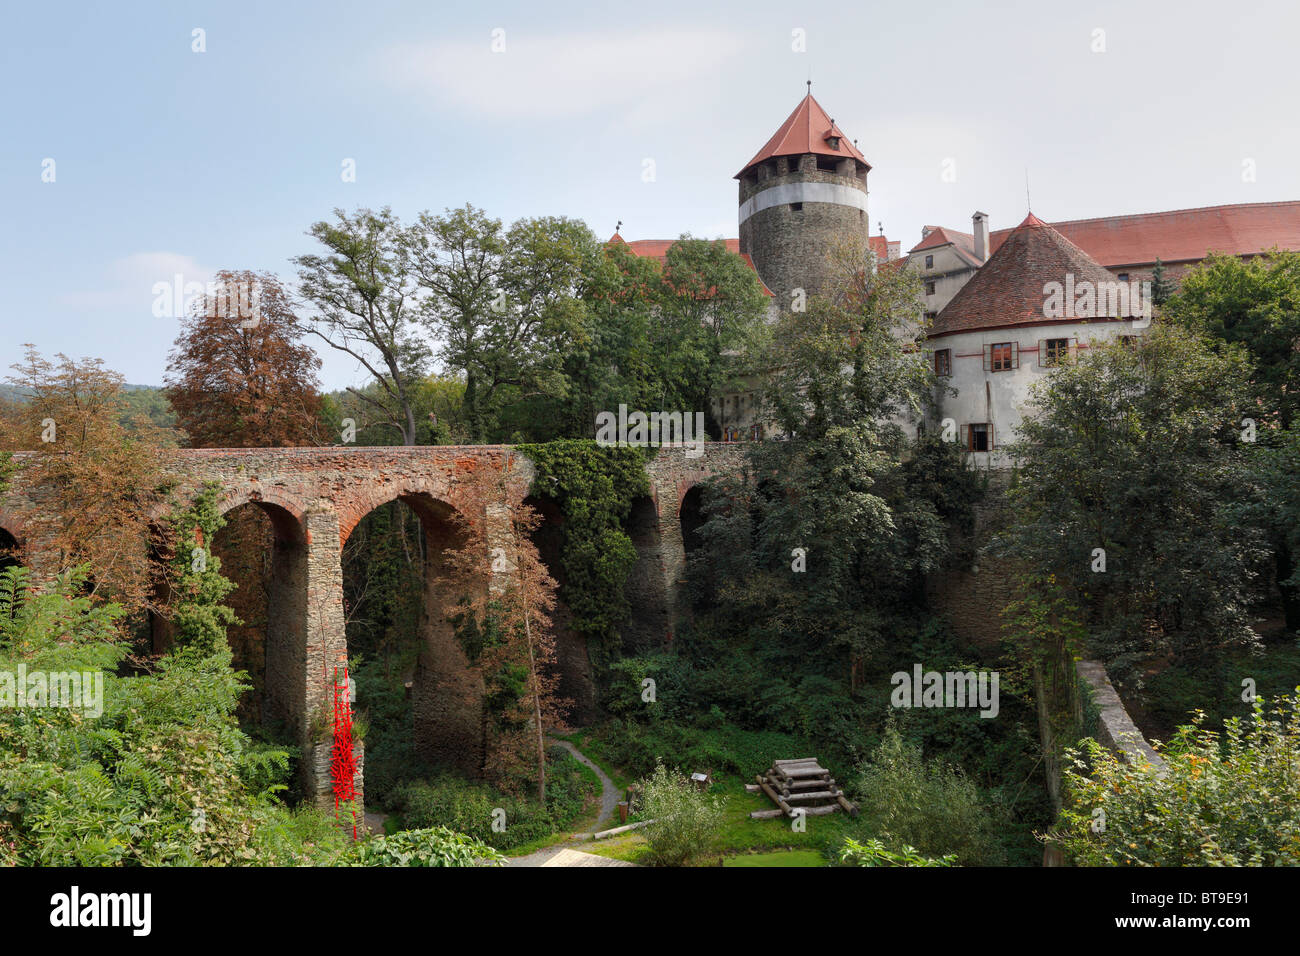 Burg Schlaining castle in Stadtschlaining, Burgenland, Austria, Europe Stock Photo